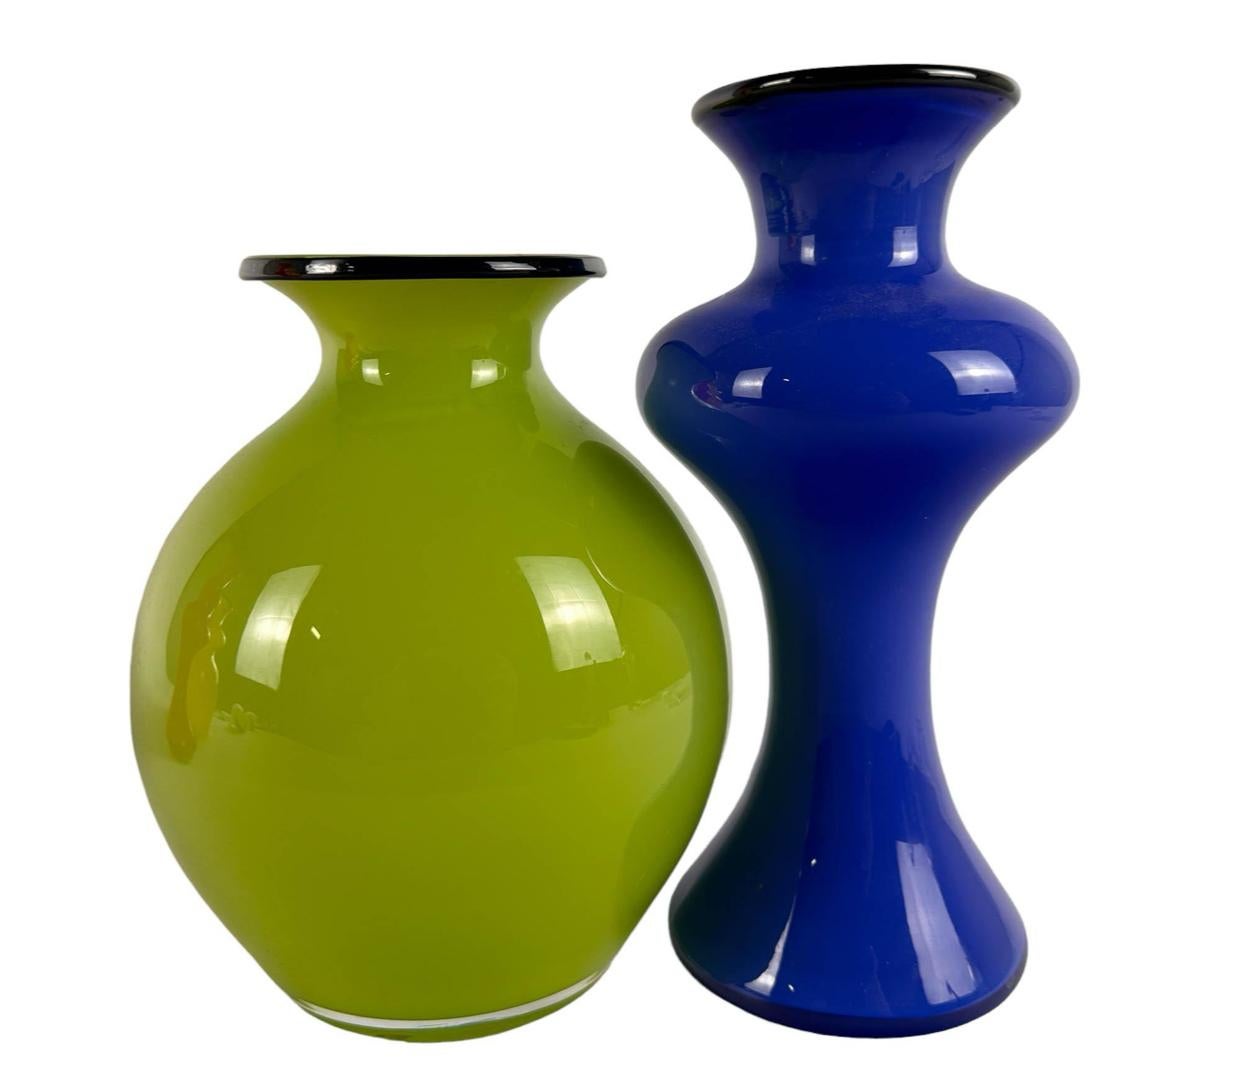 Eine Kollektion von vier Vintage-Glaskaraffen des schwedischen Designstudios Strombergshyttan. Die Farben sind: kräftiges gelbes Glas, grün, blau und rot, jeweils mit einem schwarzen Glasring um die obere Lippe. Es gibt nur zwei Stöpsel, die ein